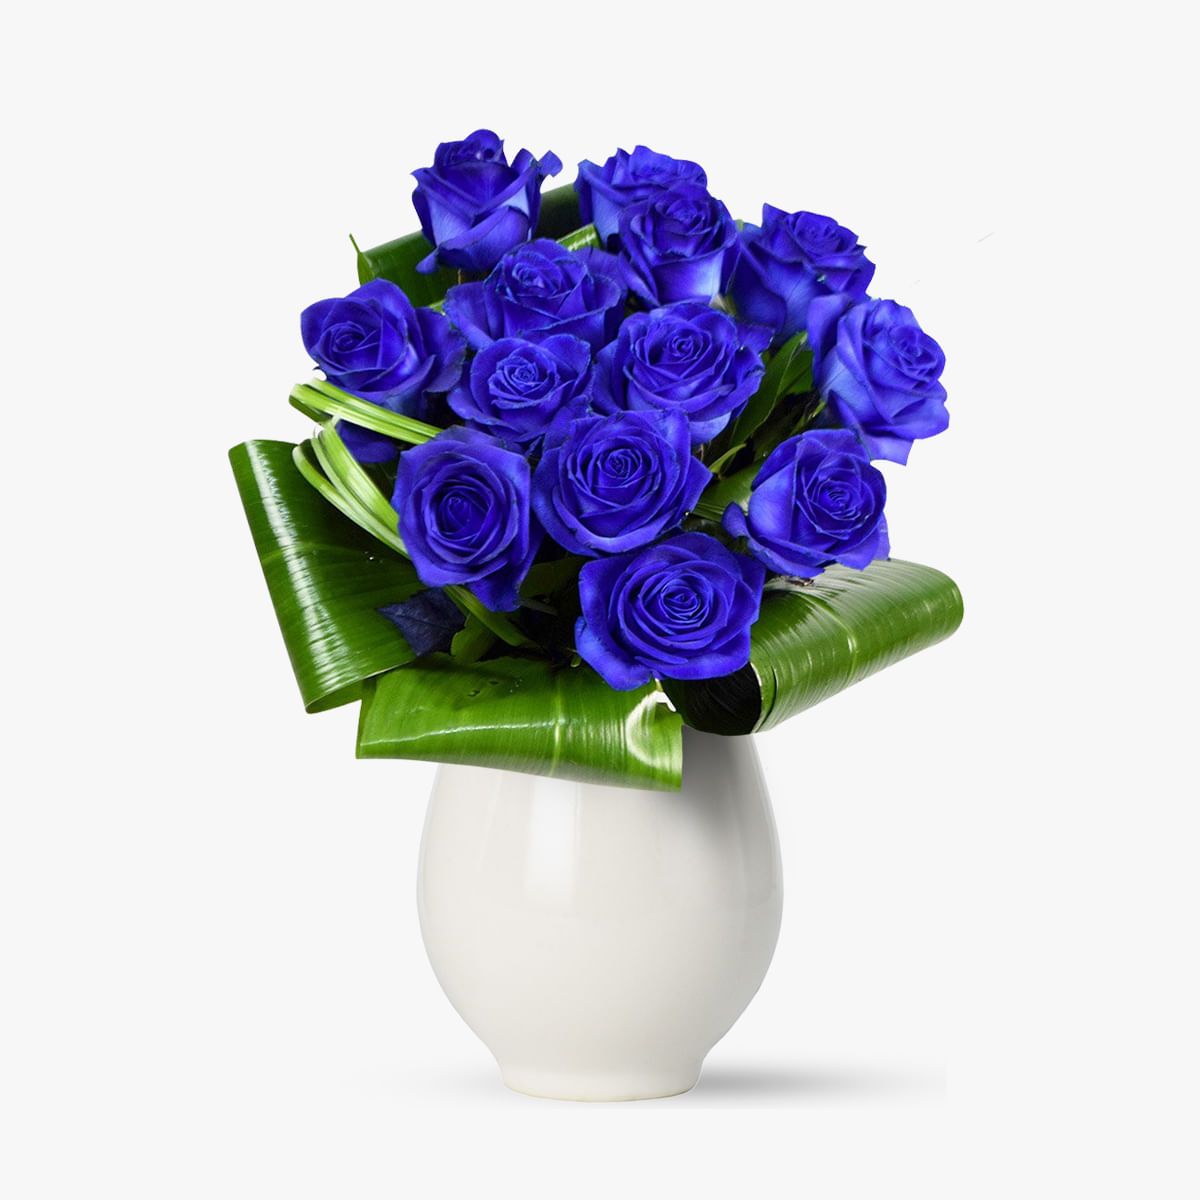 Buchet de 25 trandafiri albastri – Standard albastri